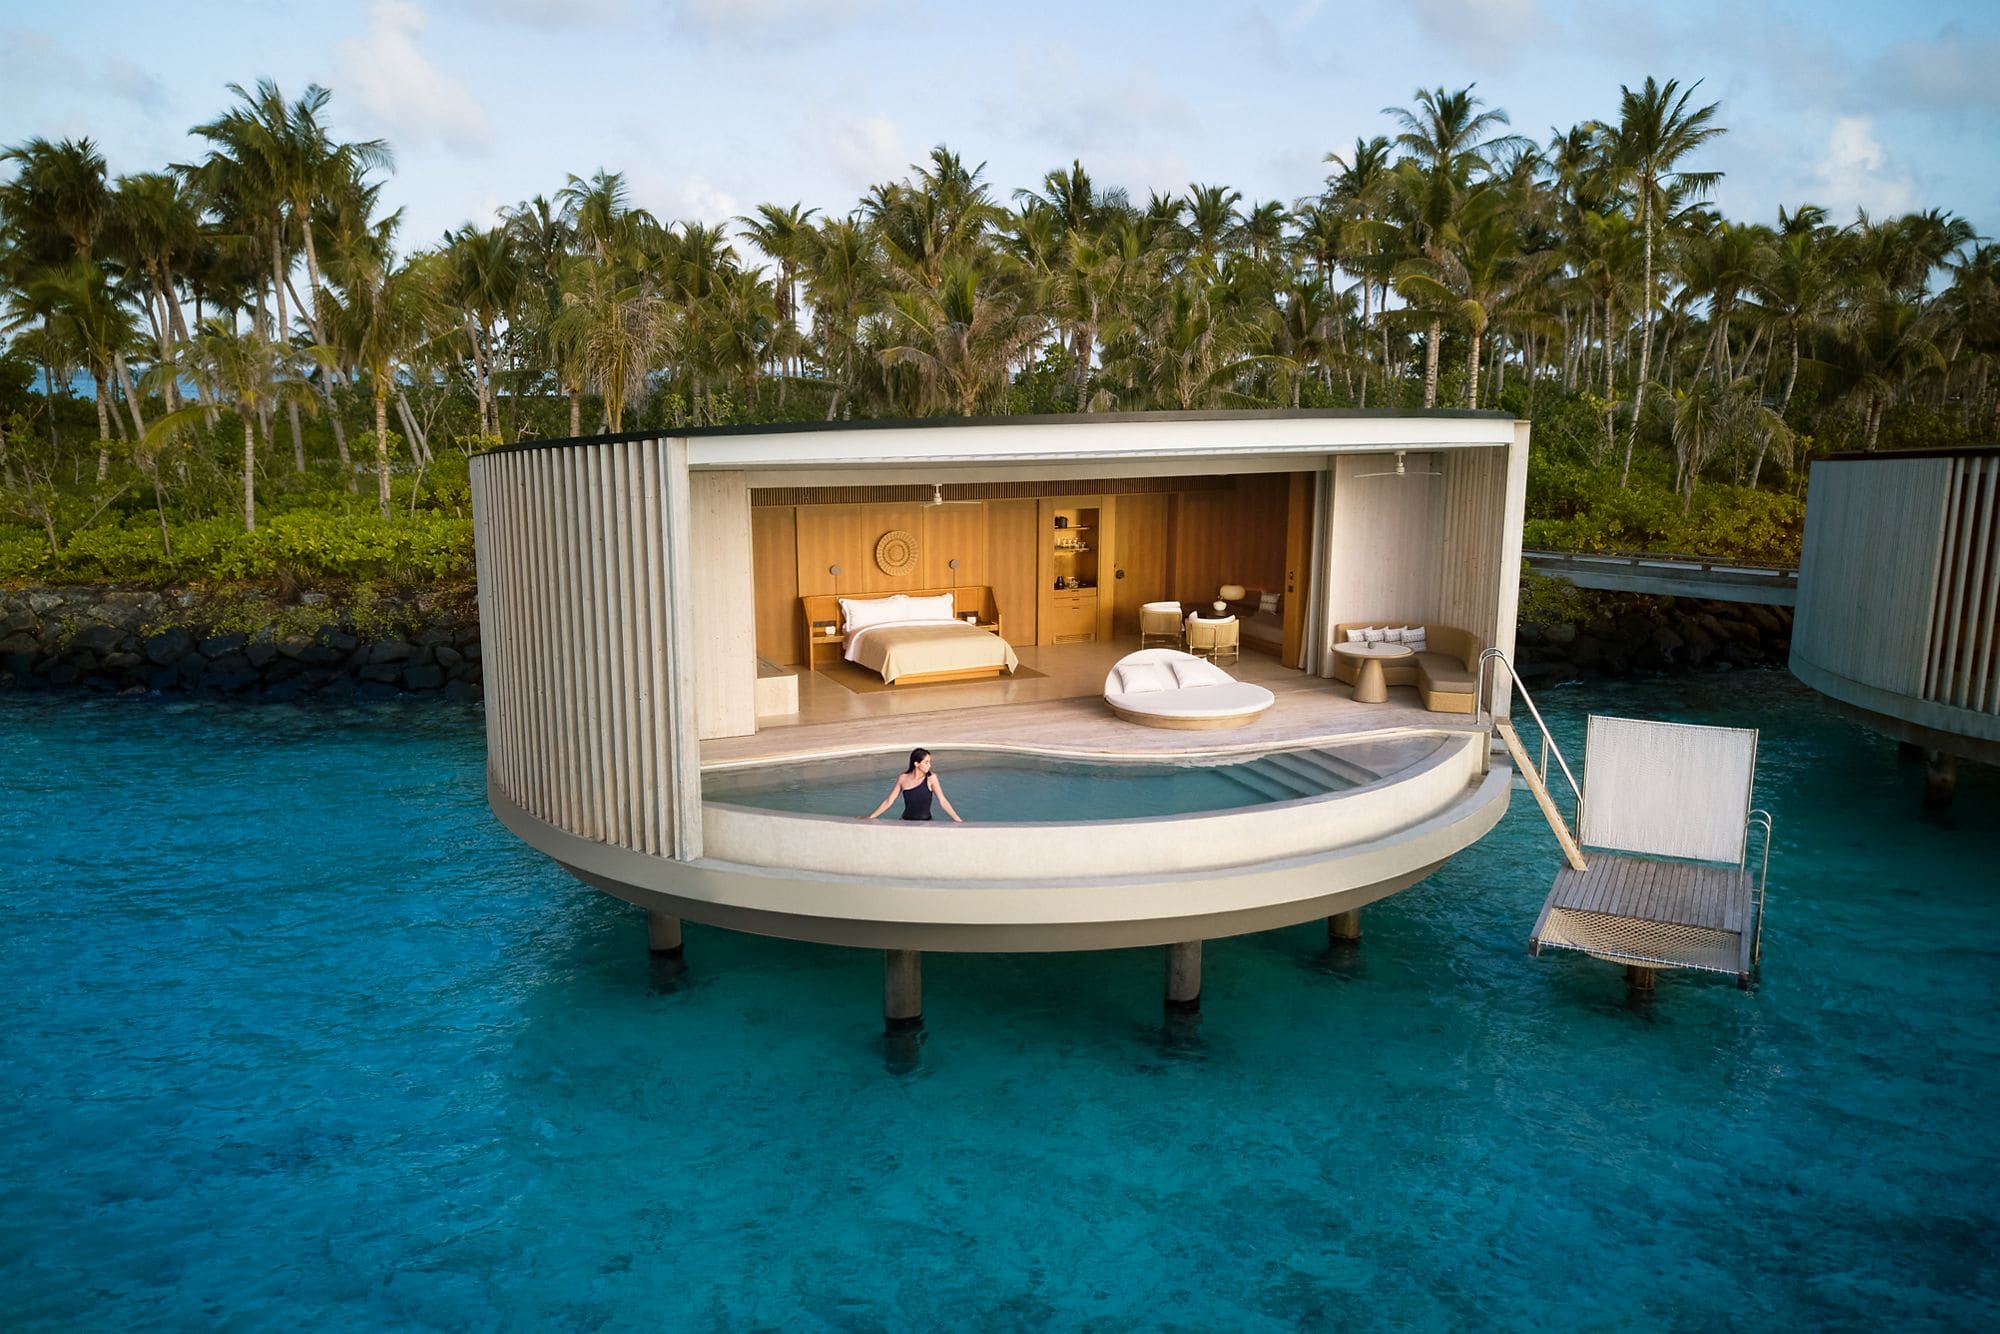 Overwater Villas vs Beach Villas in Maldives - which are better?